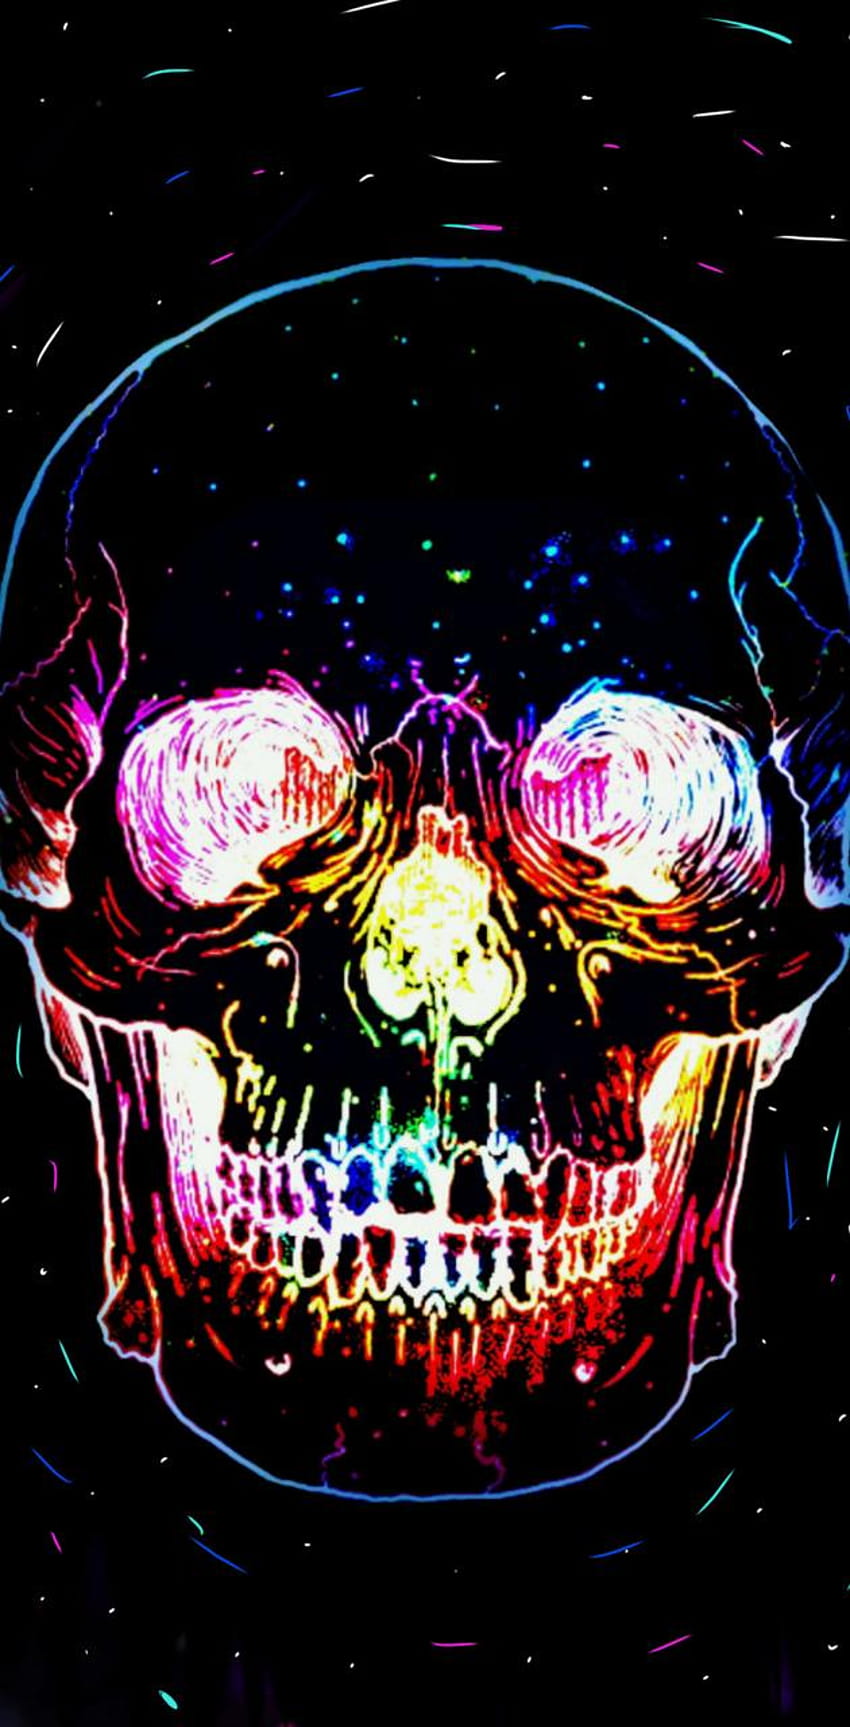 ArtStation - Galactic Skull 1